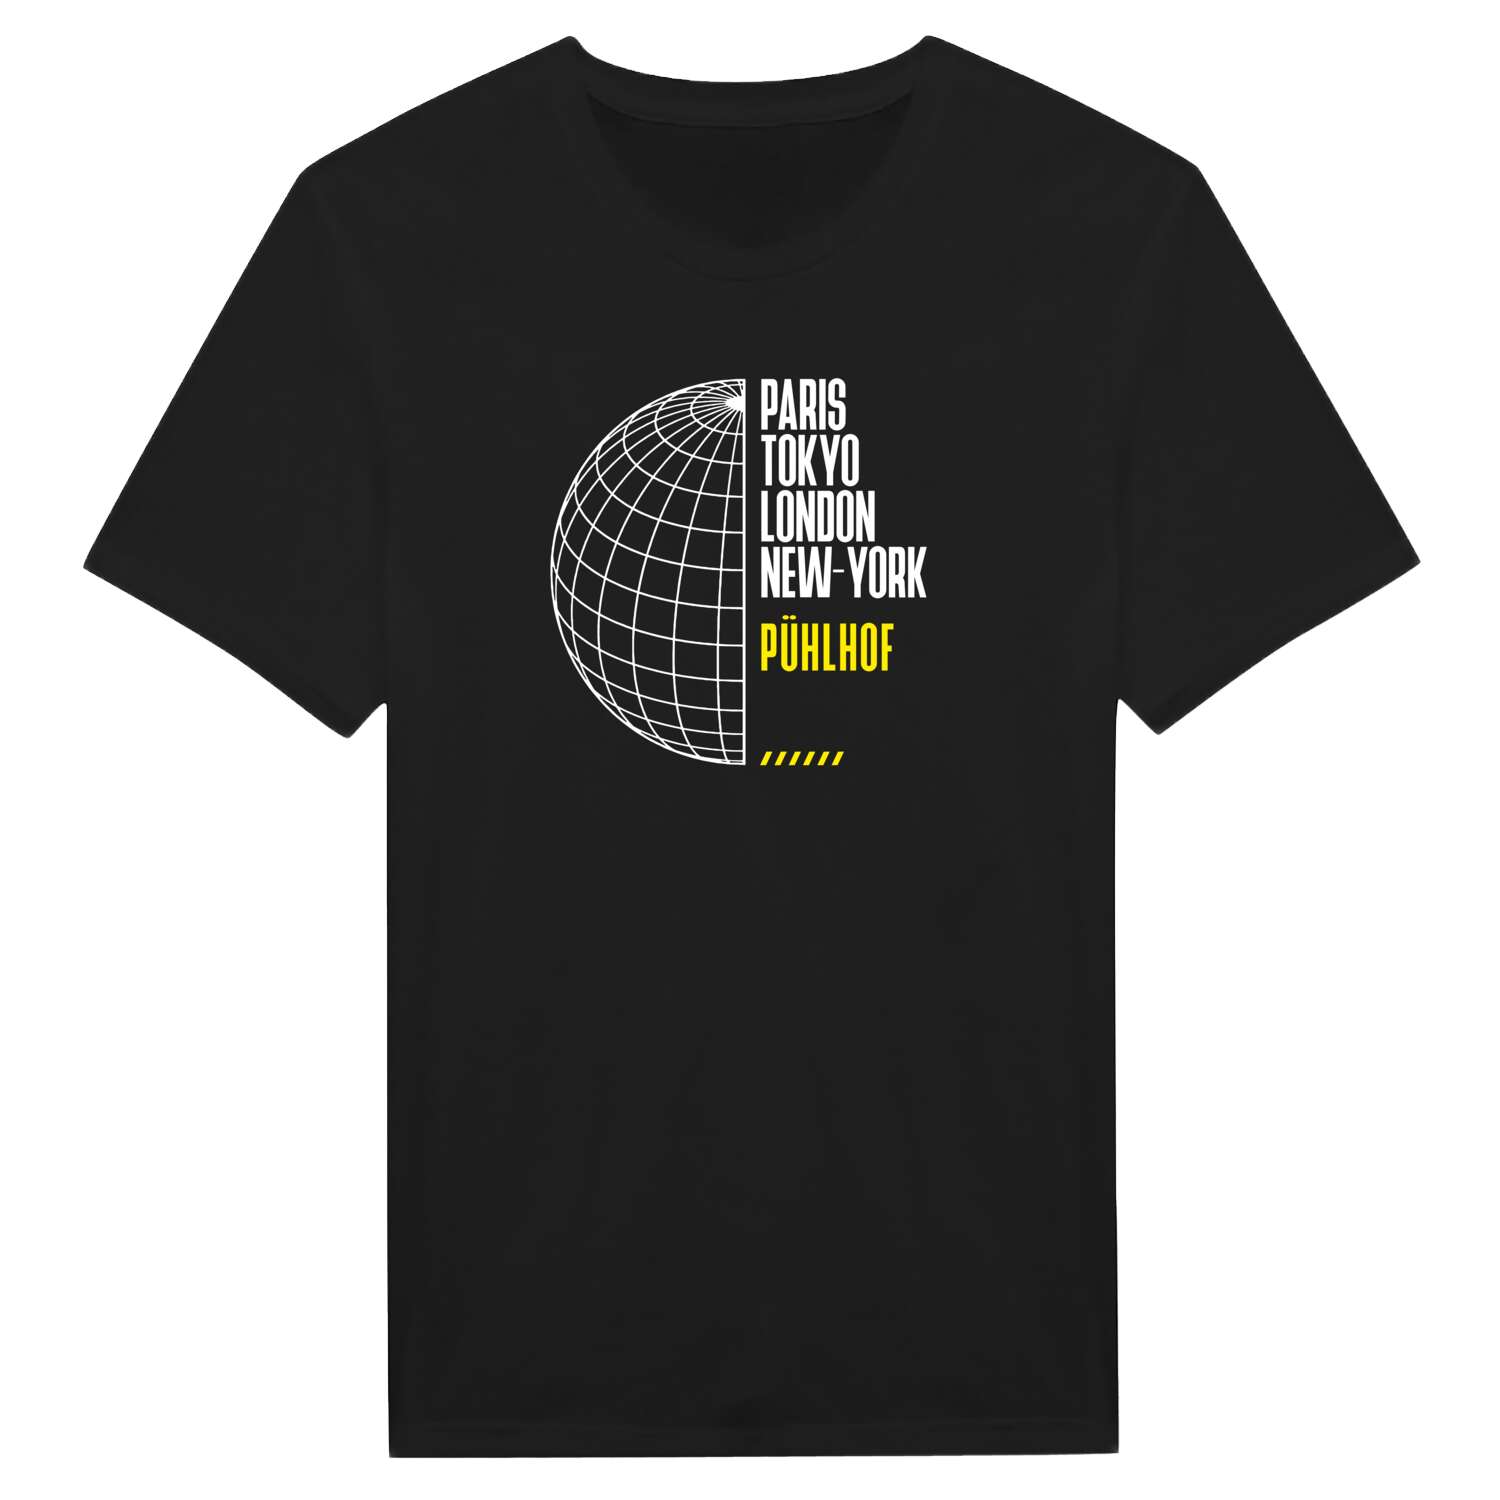 Pühlhof T-Shirt »Paris Tokyo London«